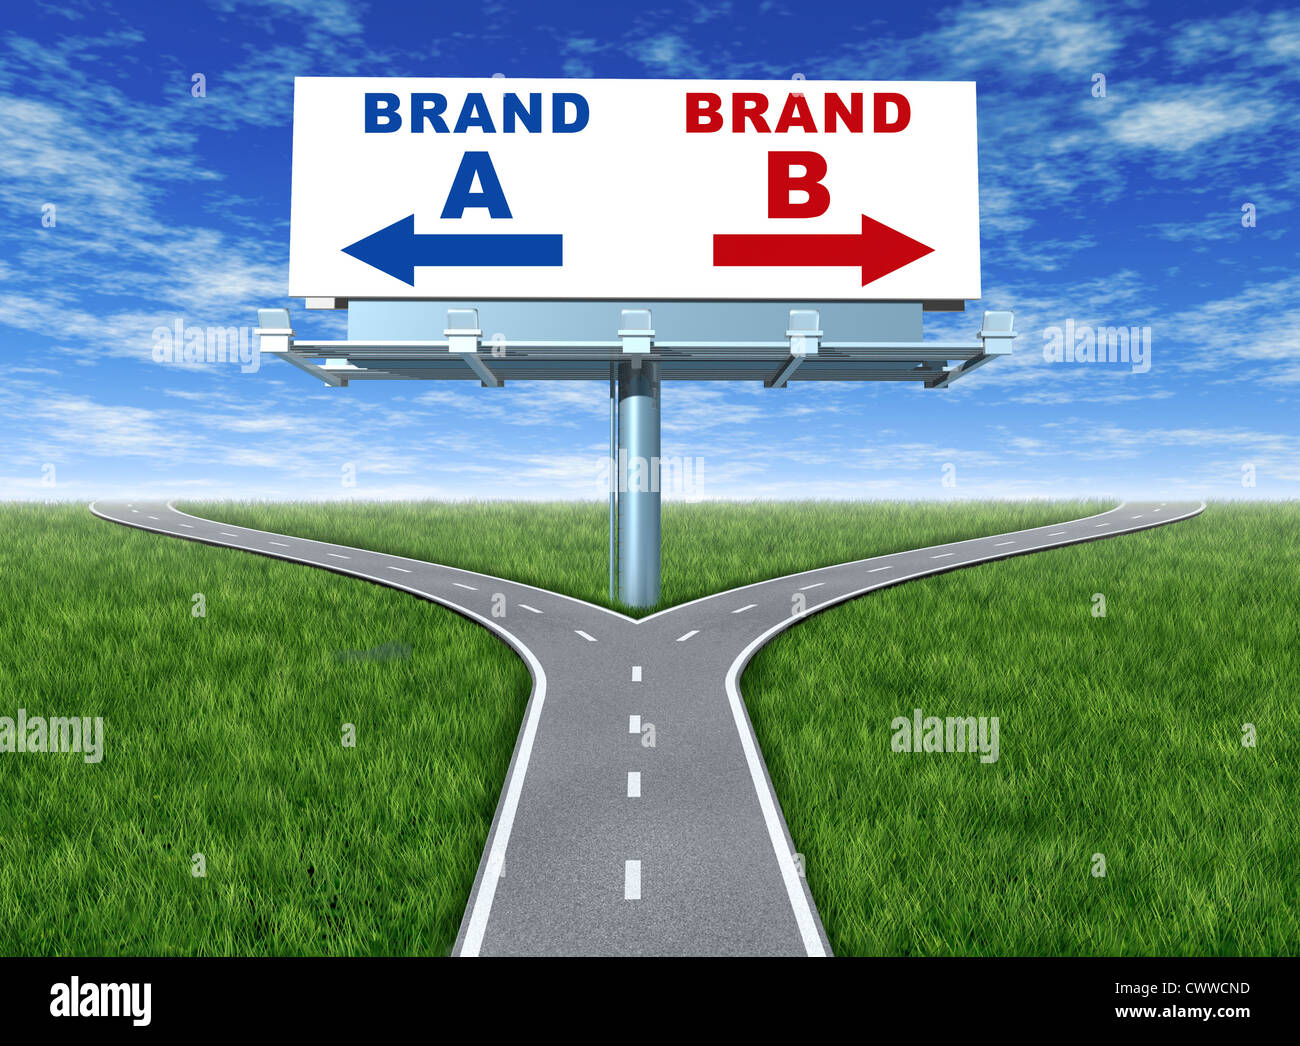 Auswahl Marken und branding Loyalität vertreten durch eine horizontale Plakatwand mit einer Auswahl der Marke ein und Marke b sitzt auf einem Kreuz Straßen mit grünem Rasen und Himmel zeigt das Konzept des Marketing und Promotion. Stockfoto